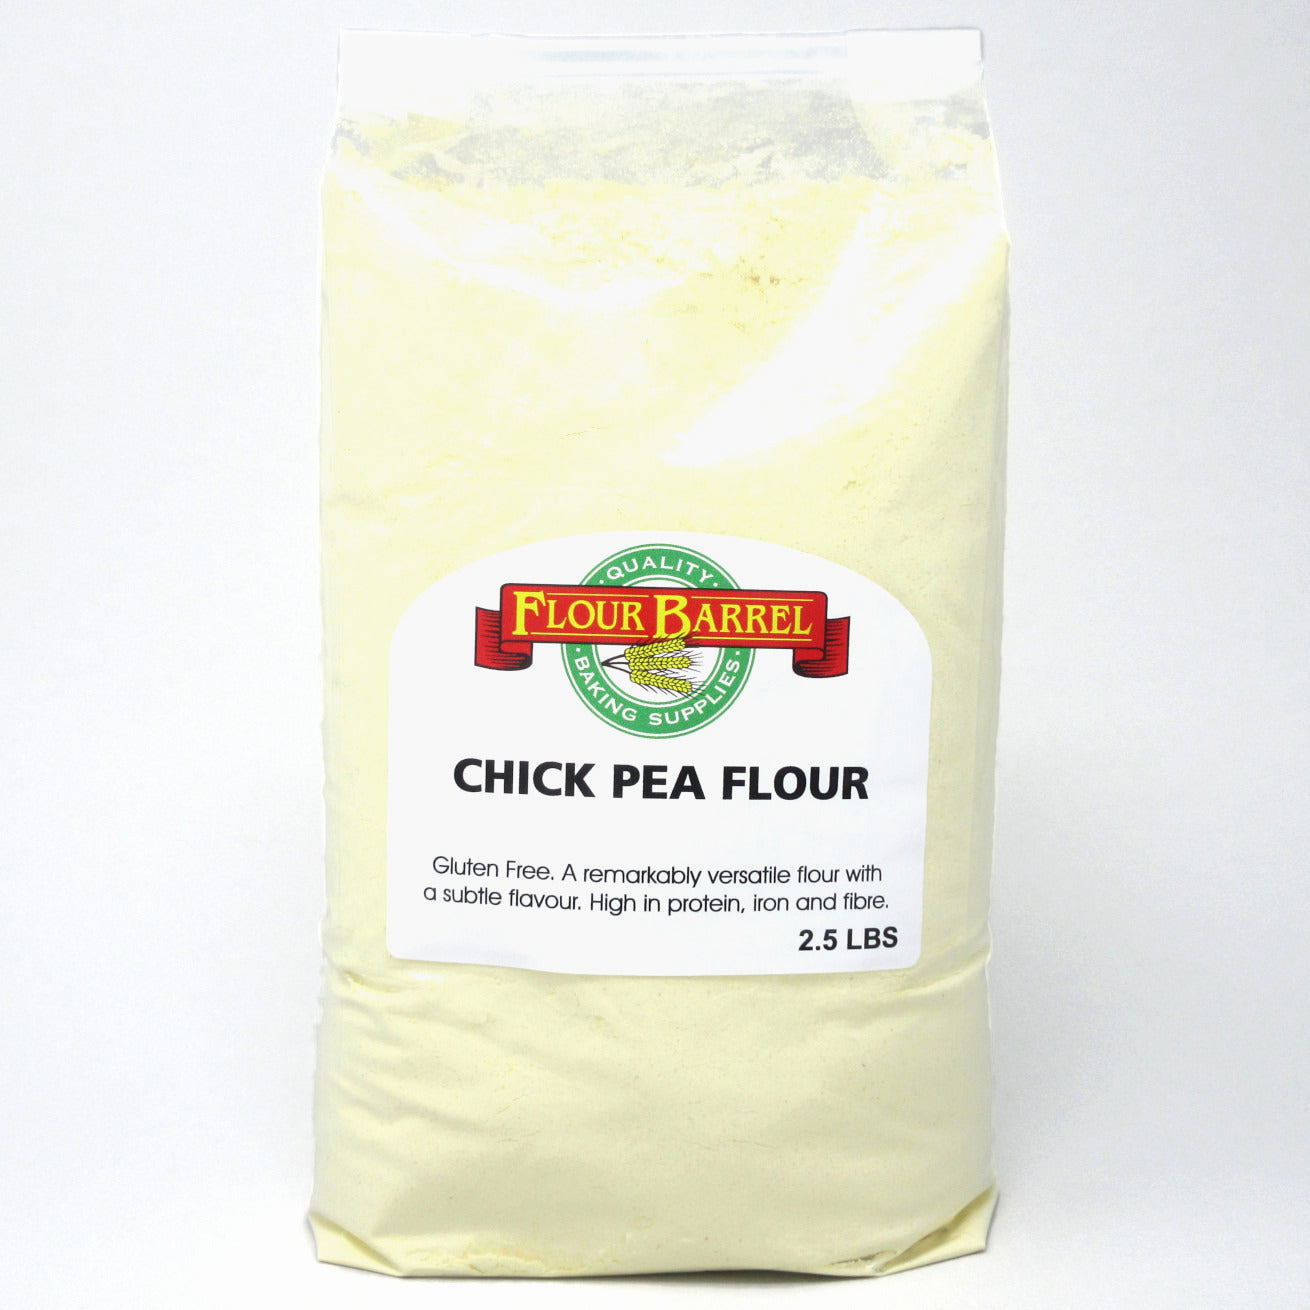 Flour Barrel product image - Chick Pea Flour